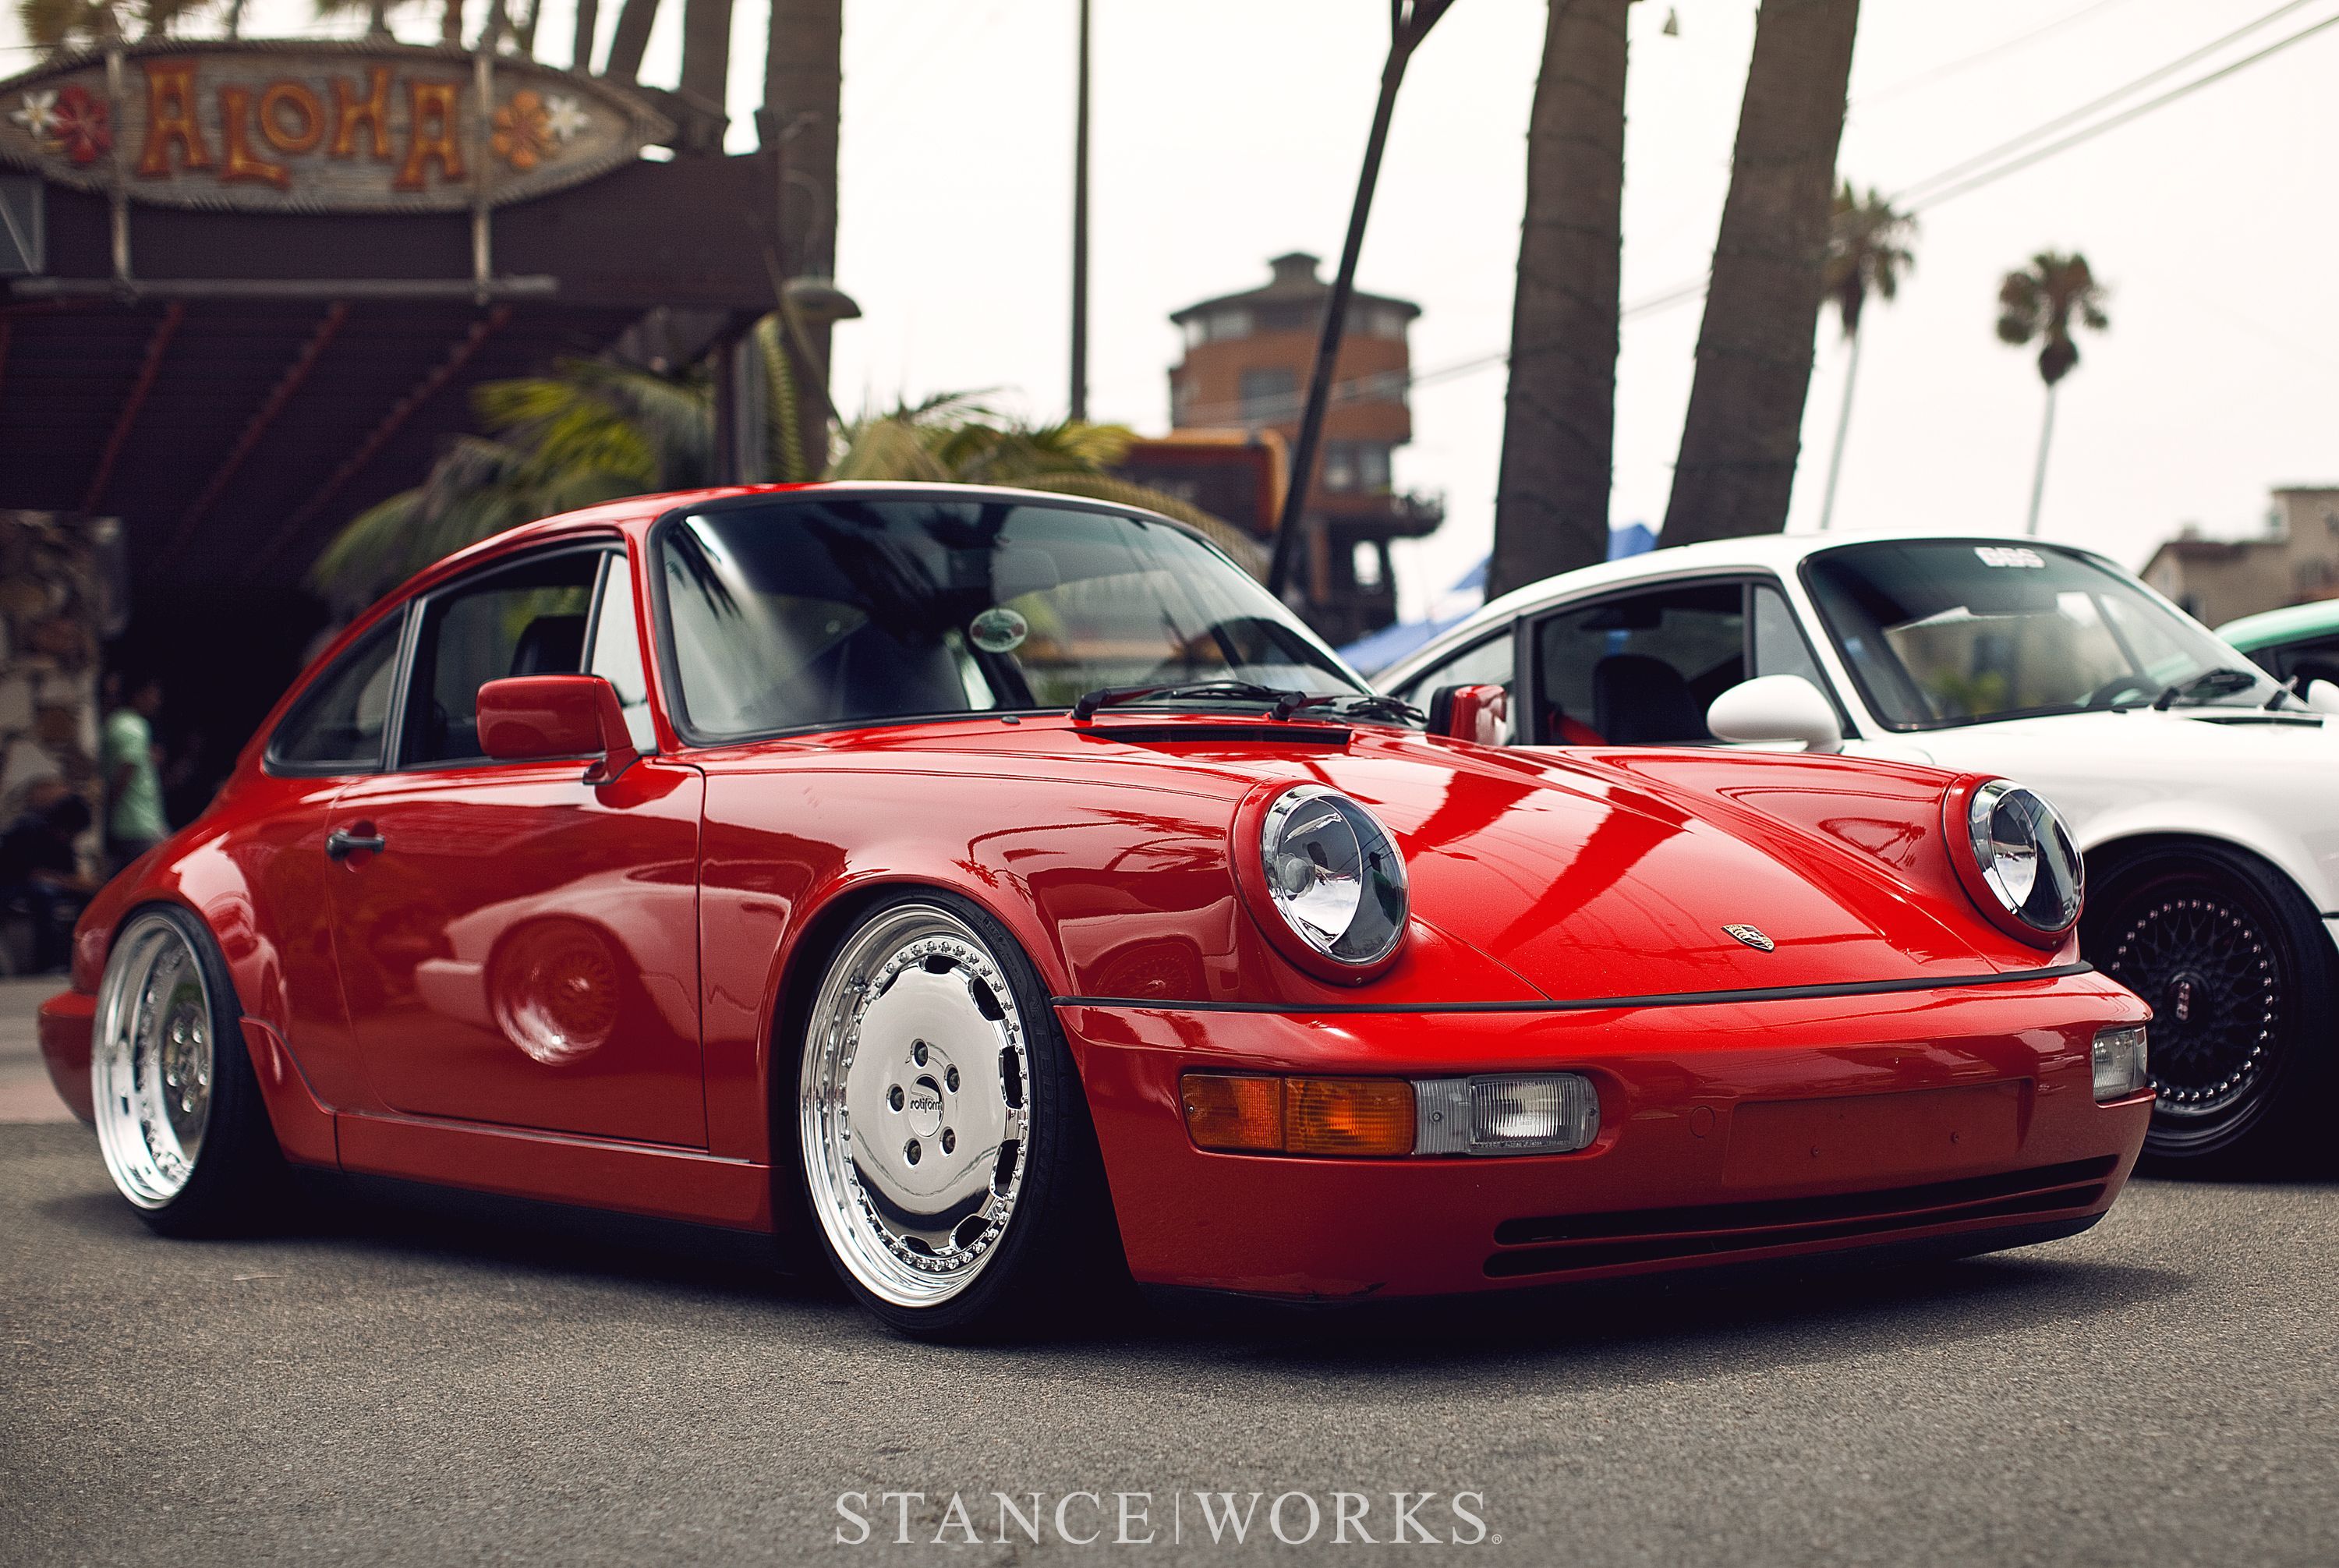 StanceWorks Wallpaper Reimann's Porsche 964 Works